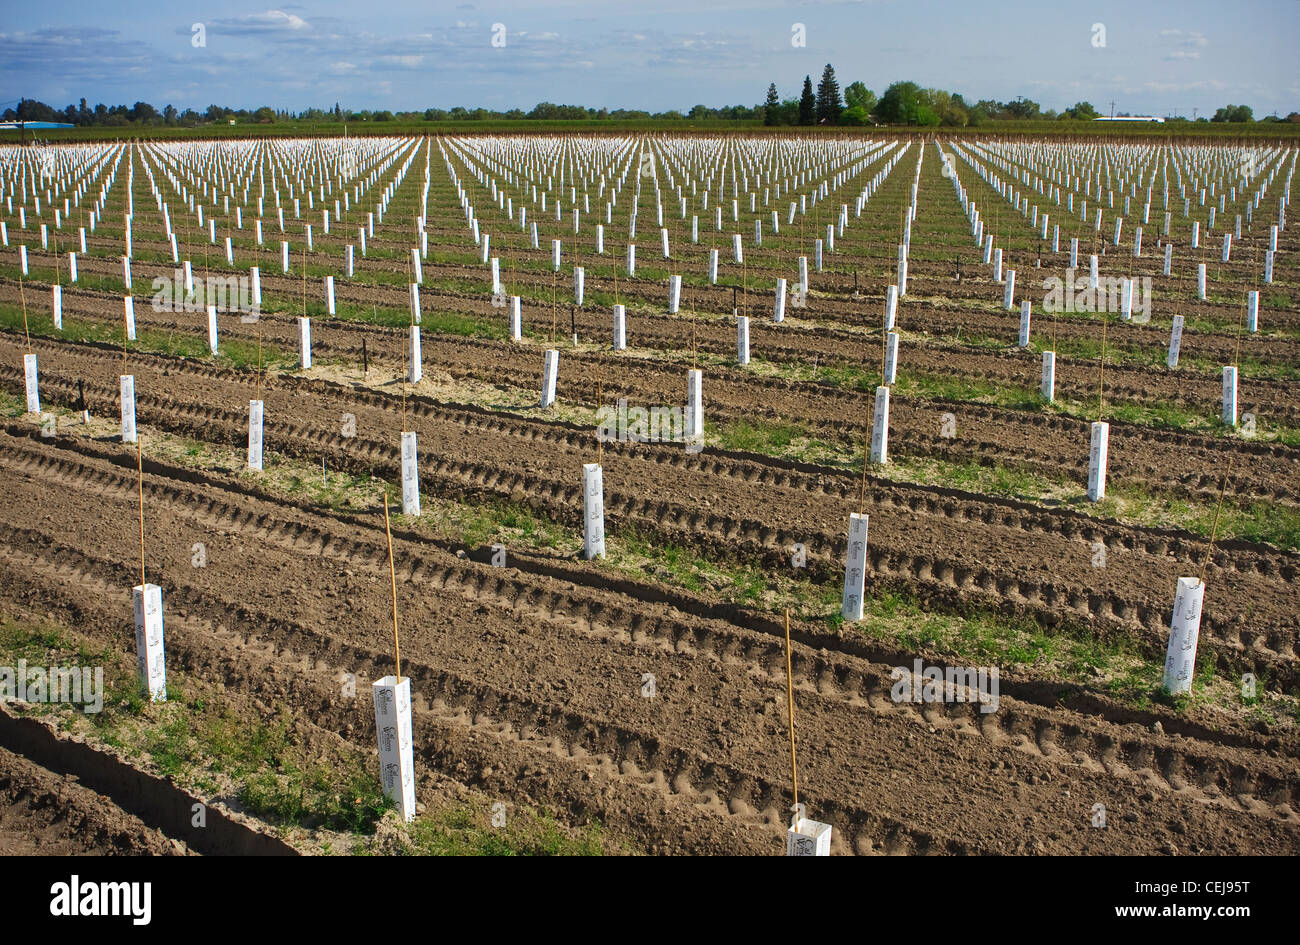 Agricoltura - piantate uva da tavola vigna utilizzando piantare i manicotti per isolare le giovani piante / California, Stati Uniti d'America. Foto Stock